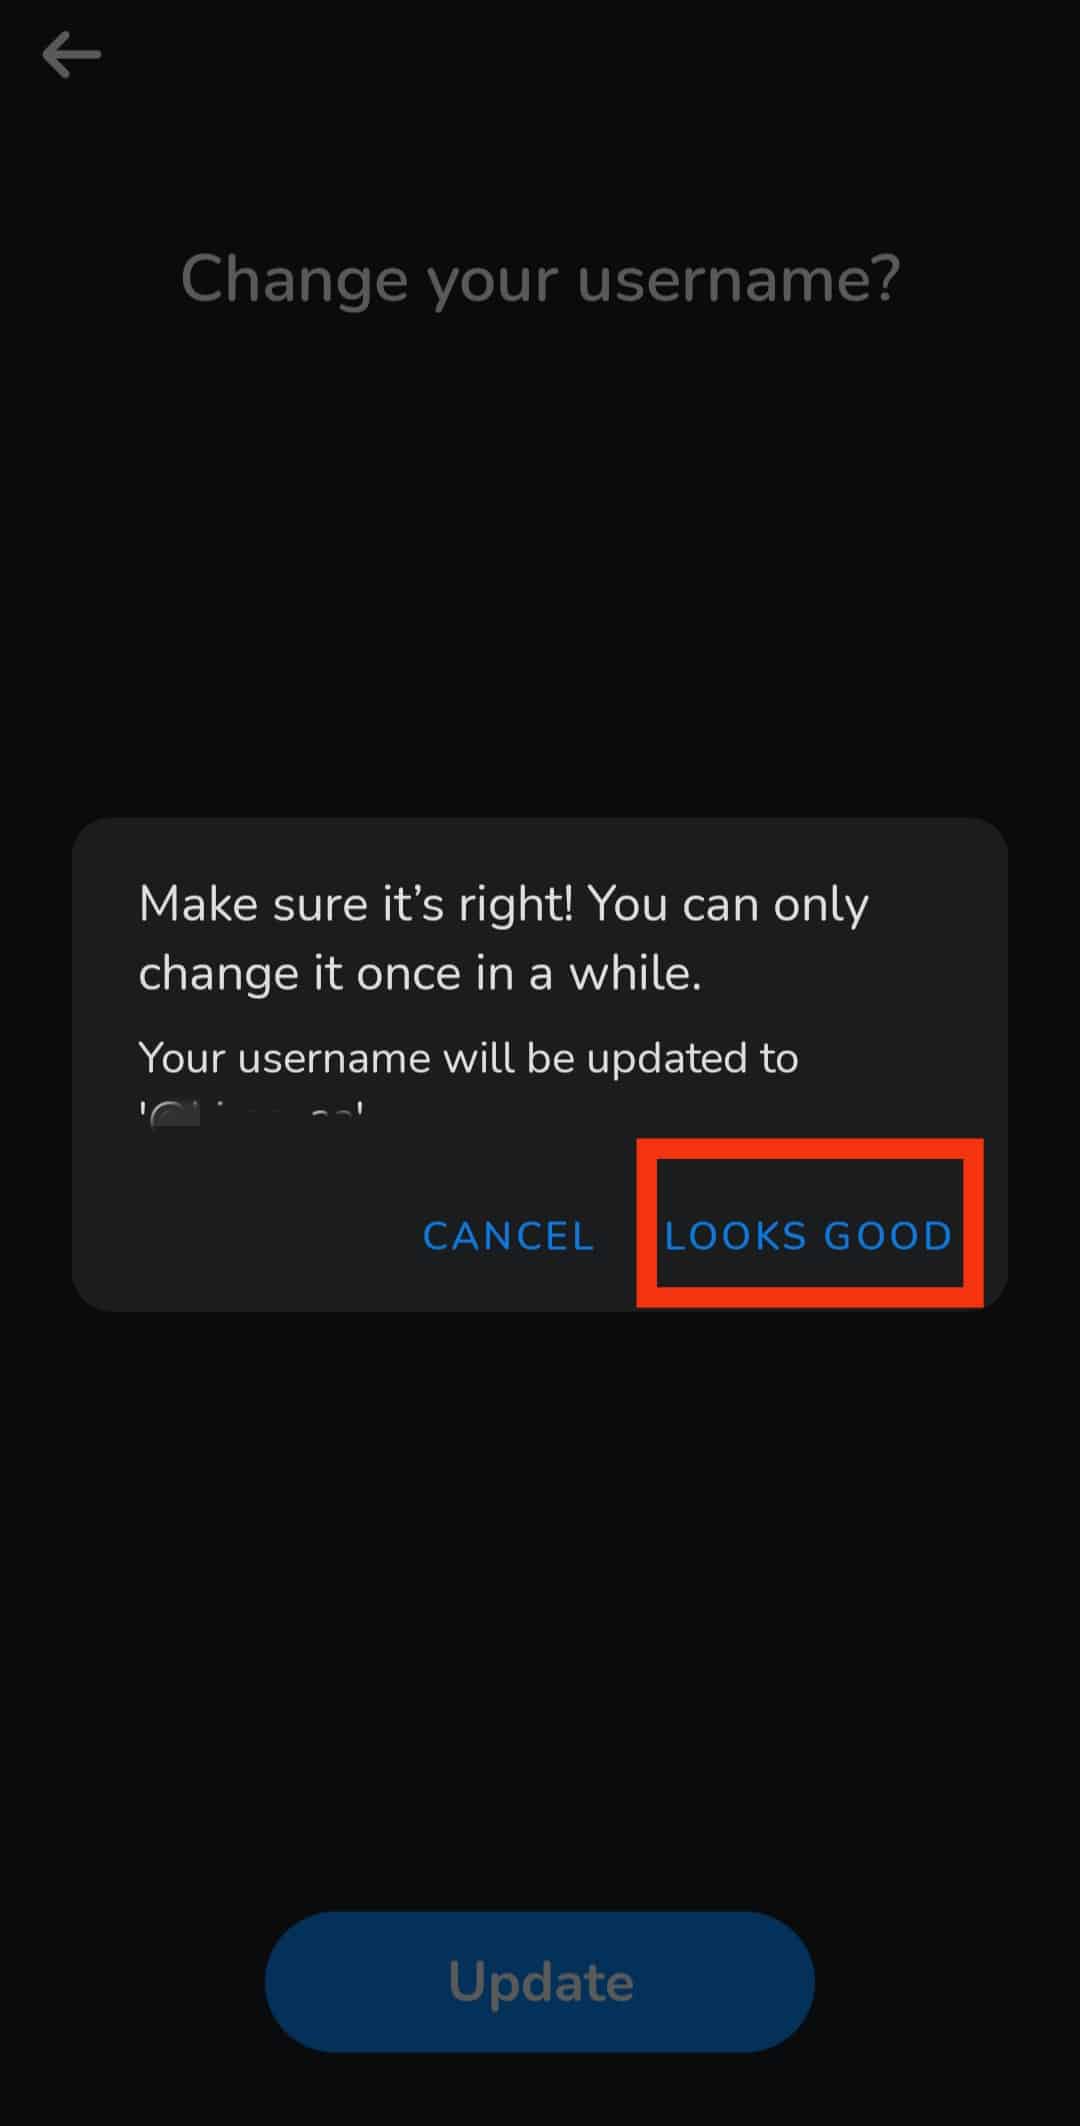 Торкніться кнопки Виглядає добре, щоб зберегти ваше нове ім’я користувача після появи вікна підтвердження.